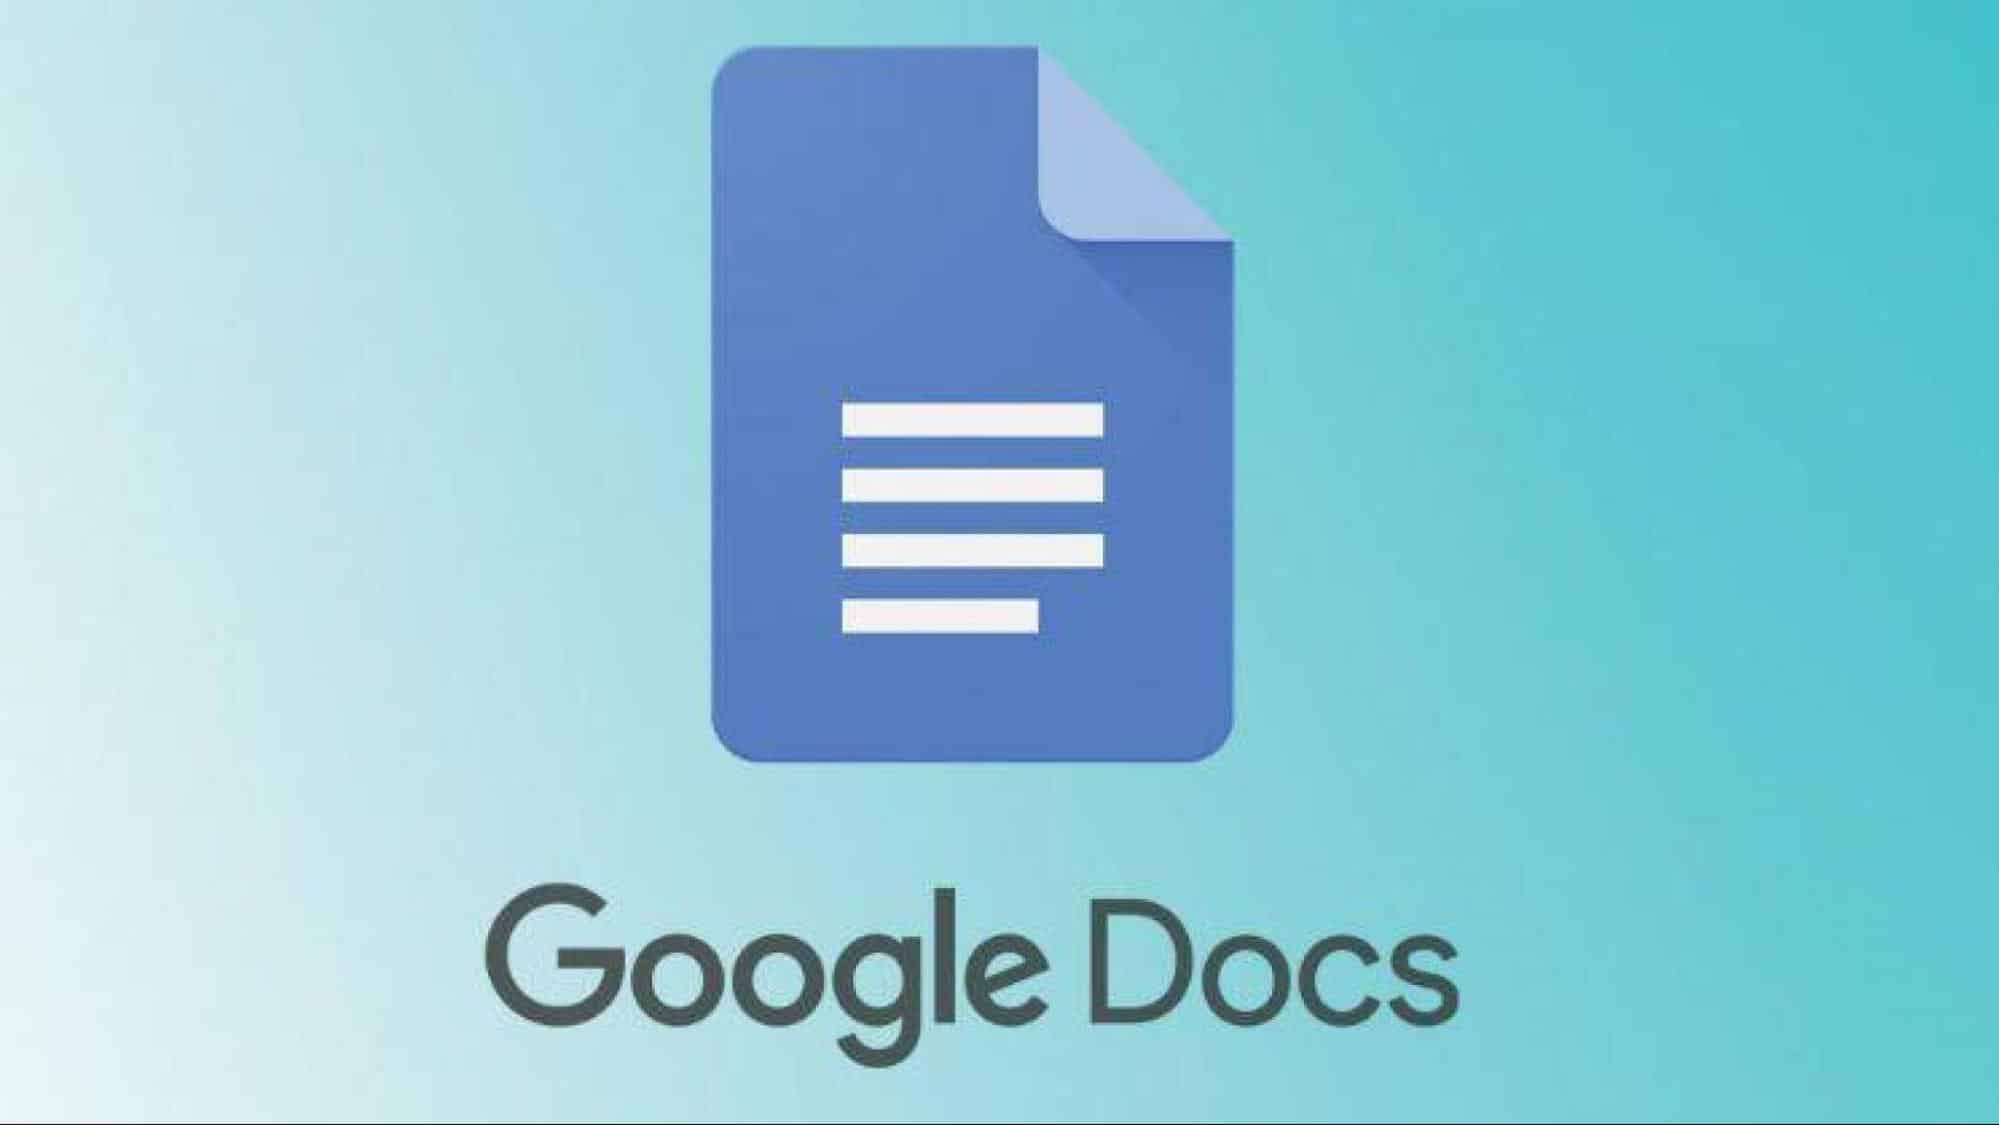 Гуглдок. Гугл документы. Гугл документы картинки. Google docs документы. Гугл документы логотип.